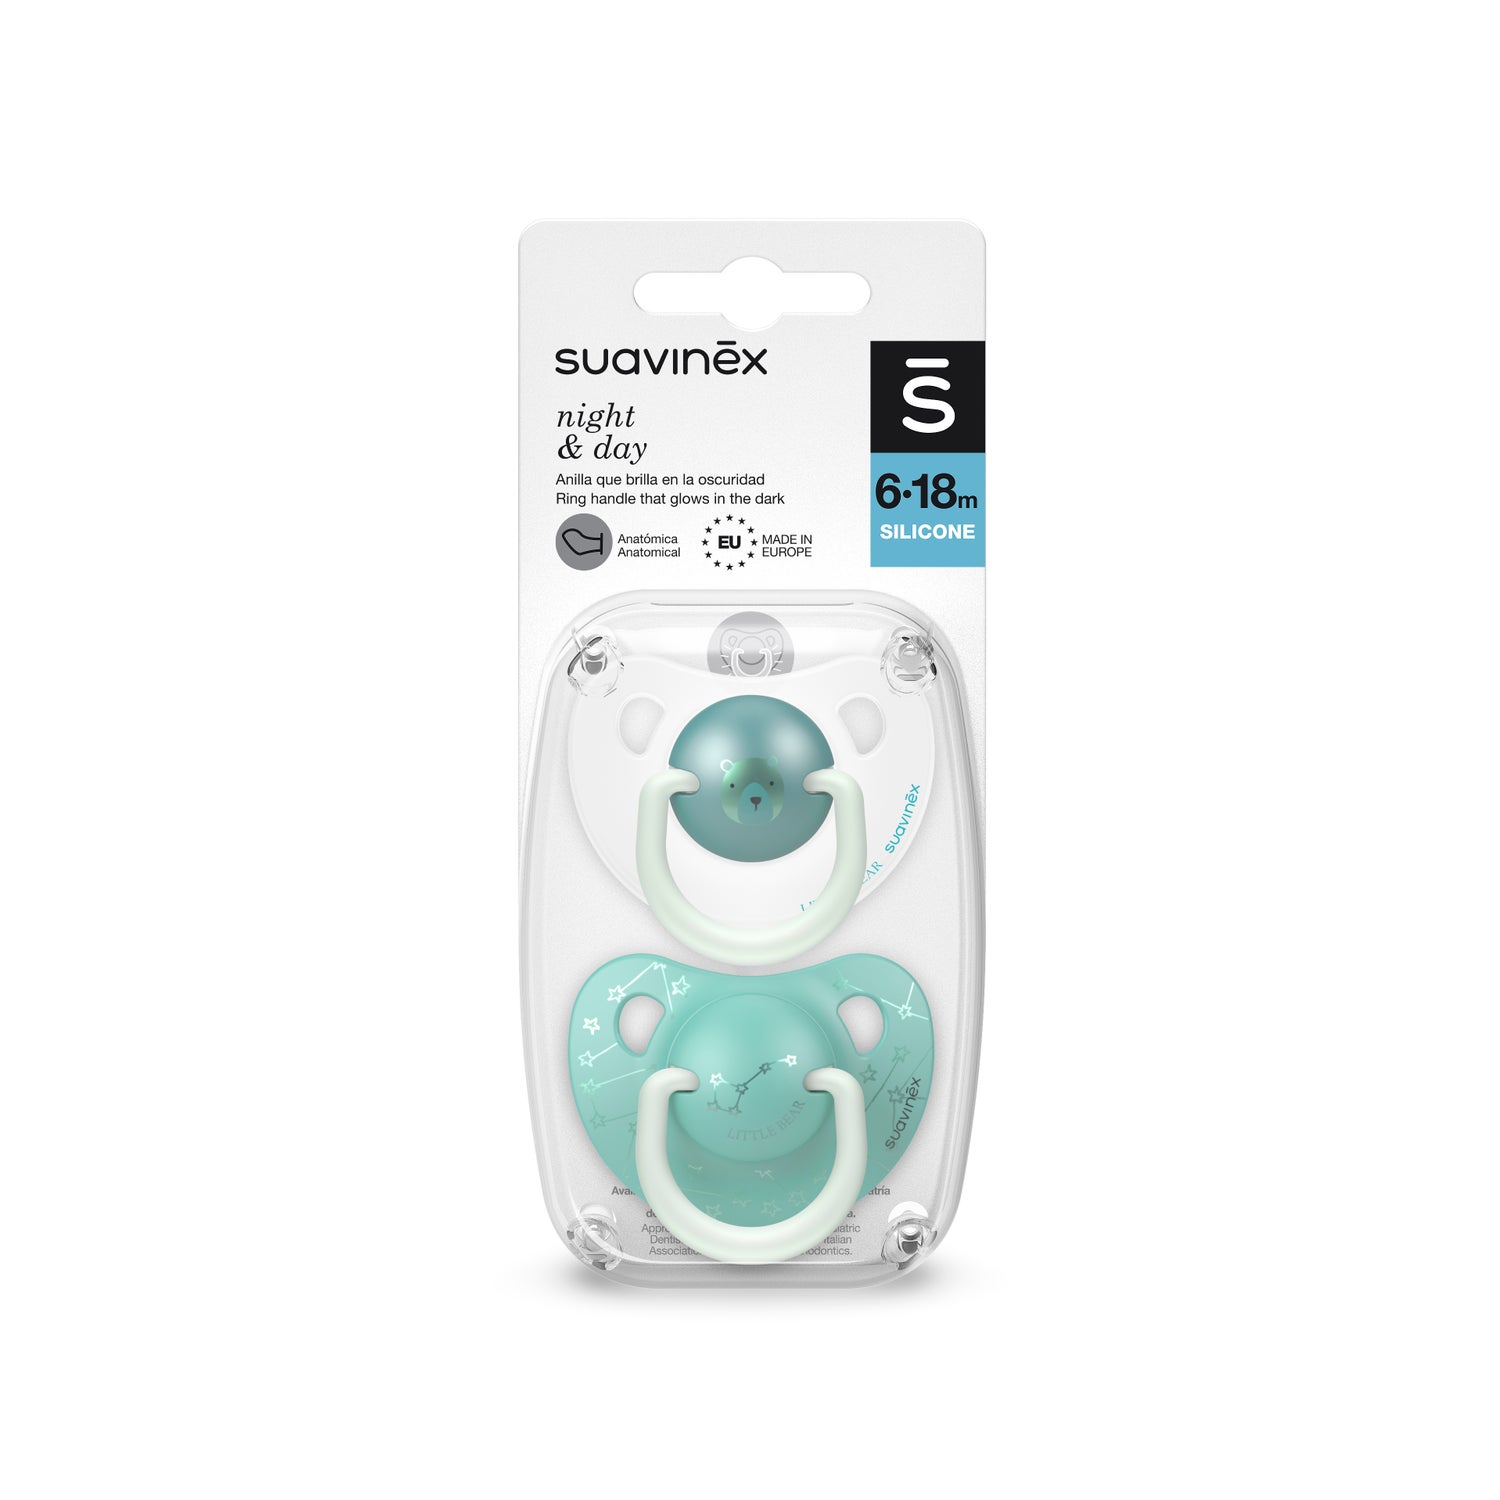 Suavinex chupete premium fisiologico SX Pro silicona 6-18m comprar